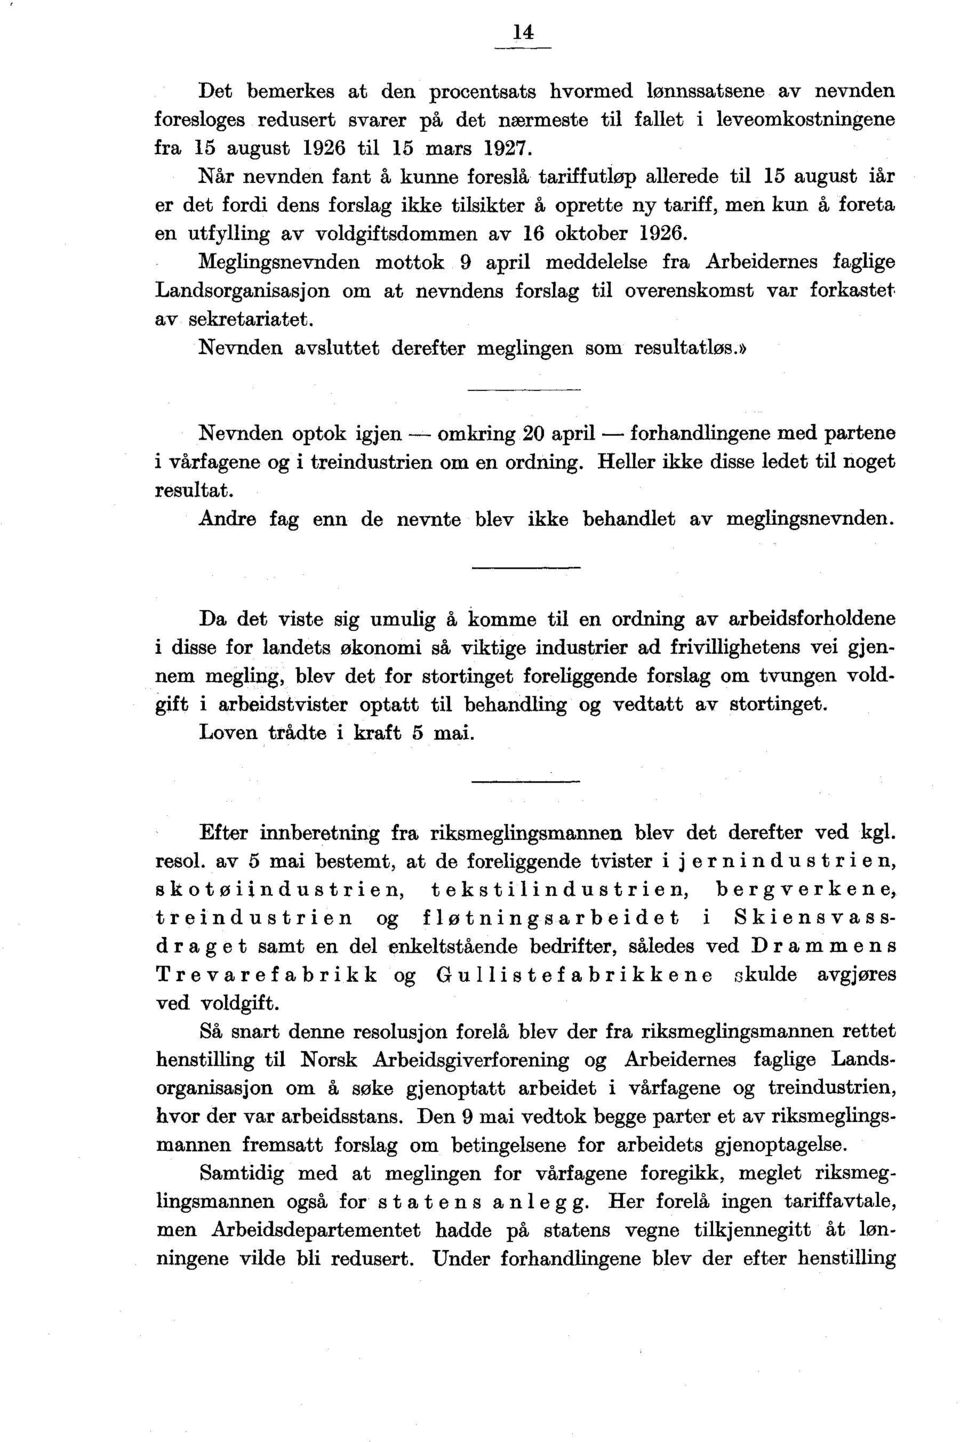 1926. Meglingsnevnden mottok 9 april meddelelse fra Arbeidernes faglige Landsorganisasjon om at nevndens forslag til overenskomst var forkastet av sekretariatet.